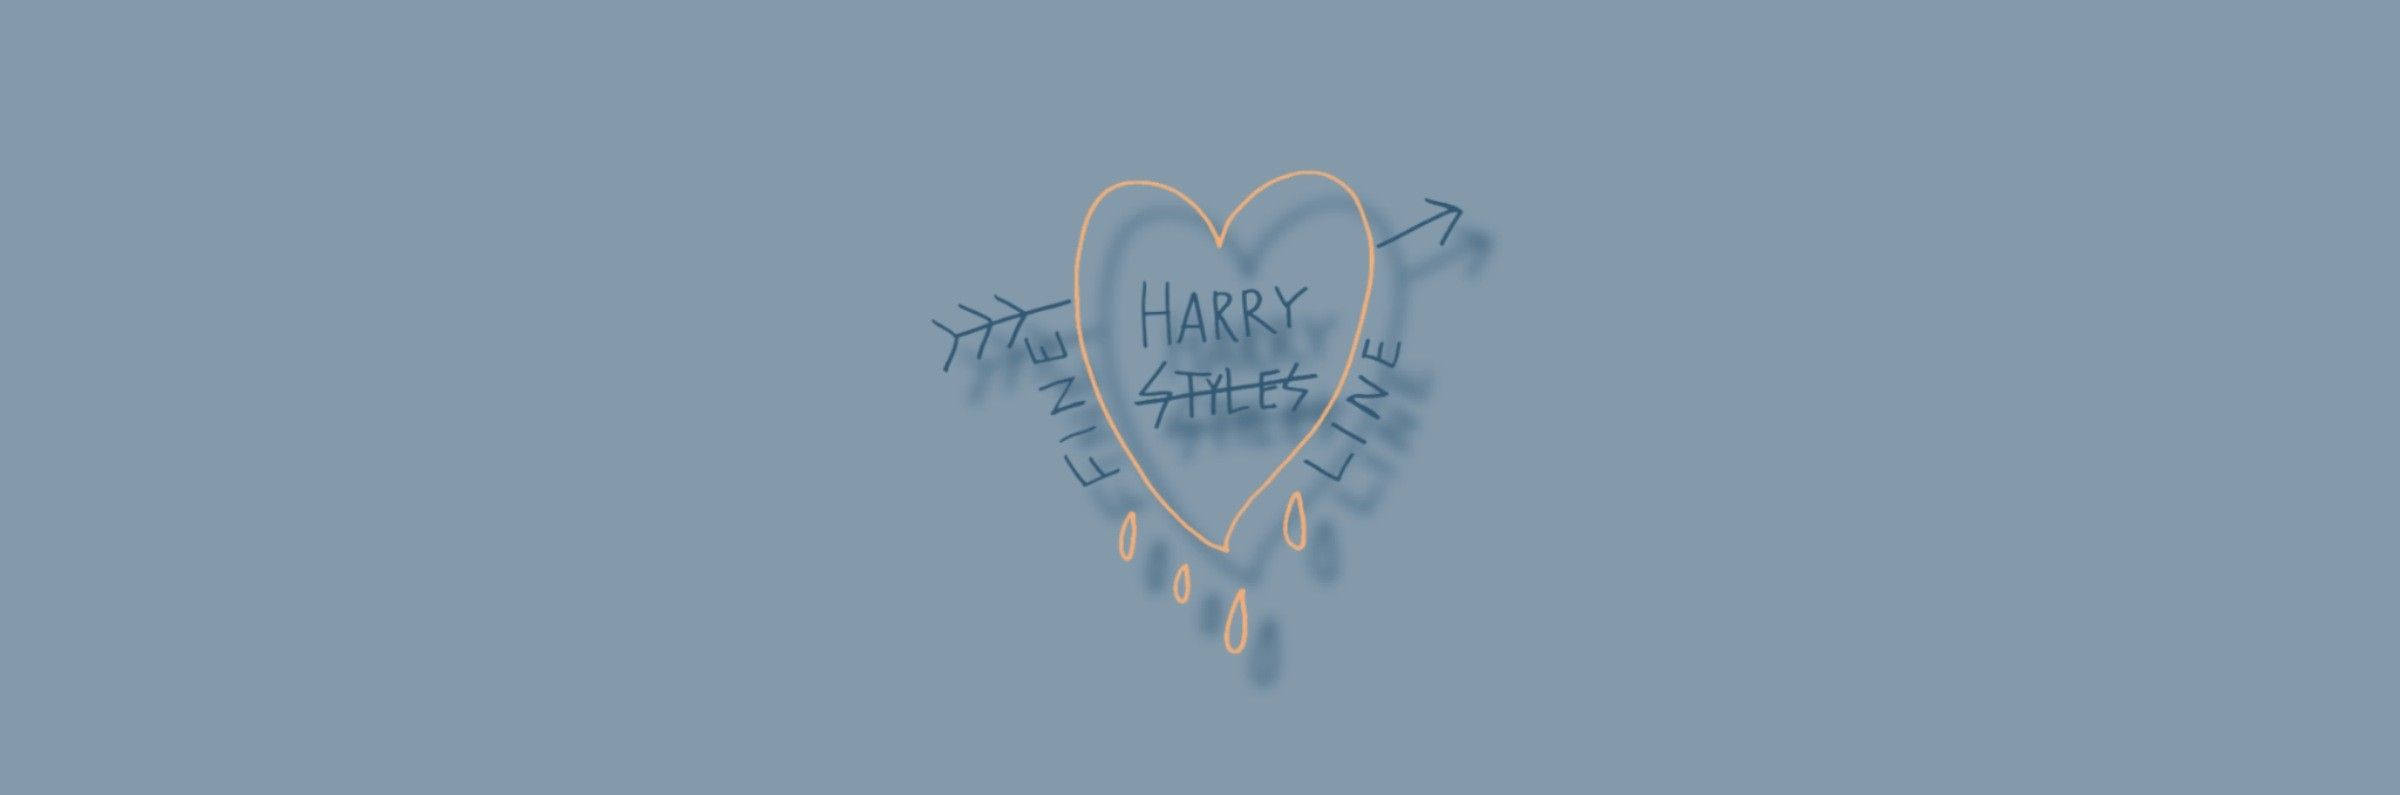 Harry Styles Fin Linje Twitter-header Wallpaper